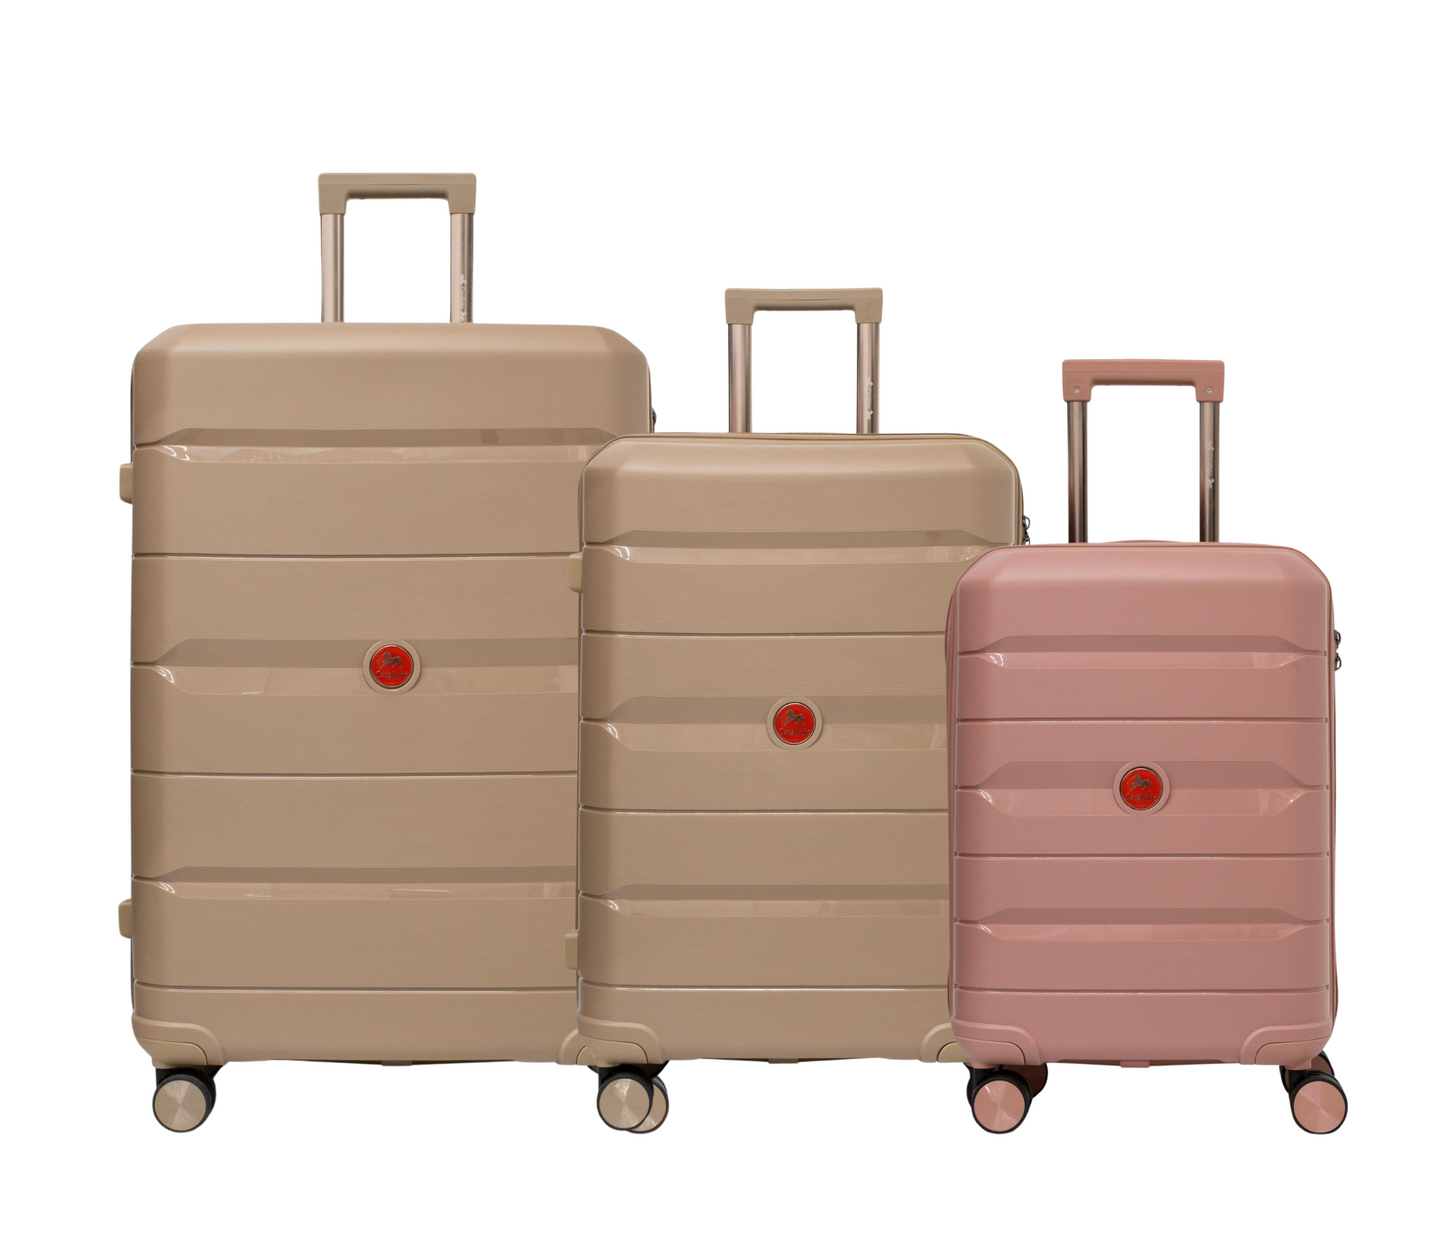 #color_ RoseGold GoldenRod GoldenRod | Cavalinho Canada & USA Oasis 3 Piece Luggage Set (20", 24" & 28") - RoseGold GoldenRod GoldenRod - 68040001.180707.202428._1